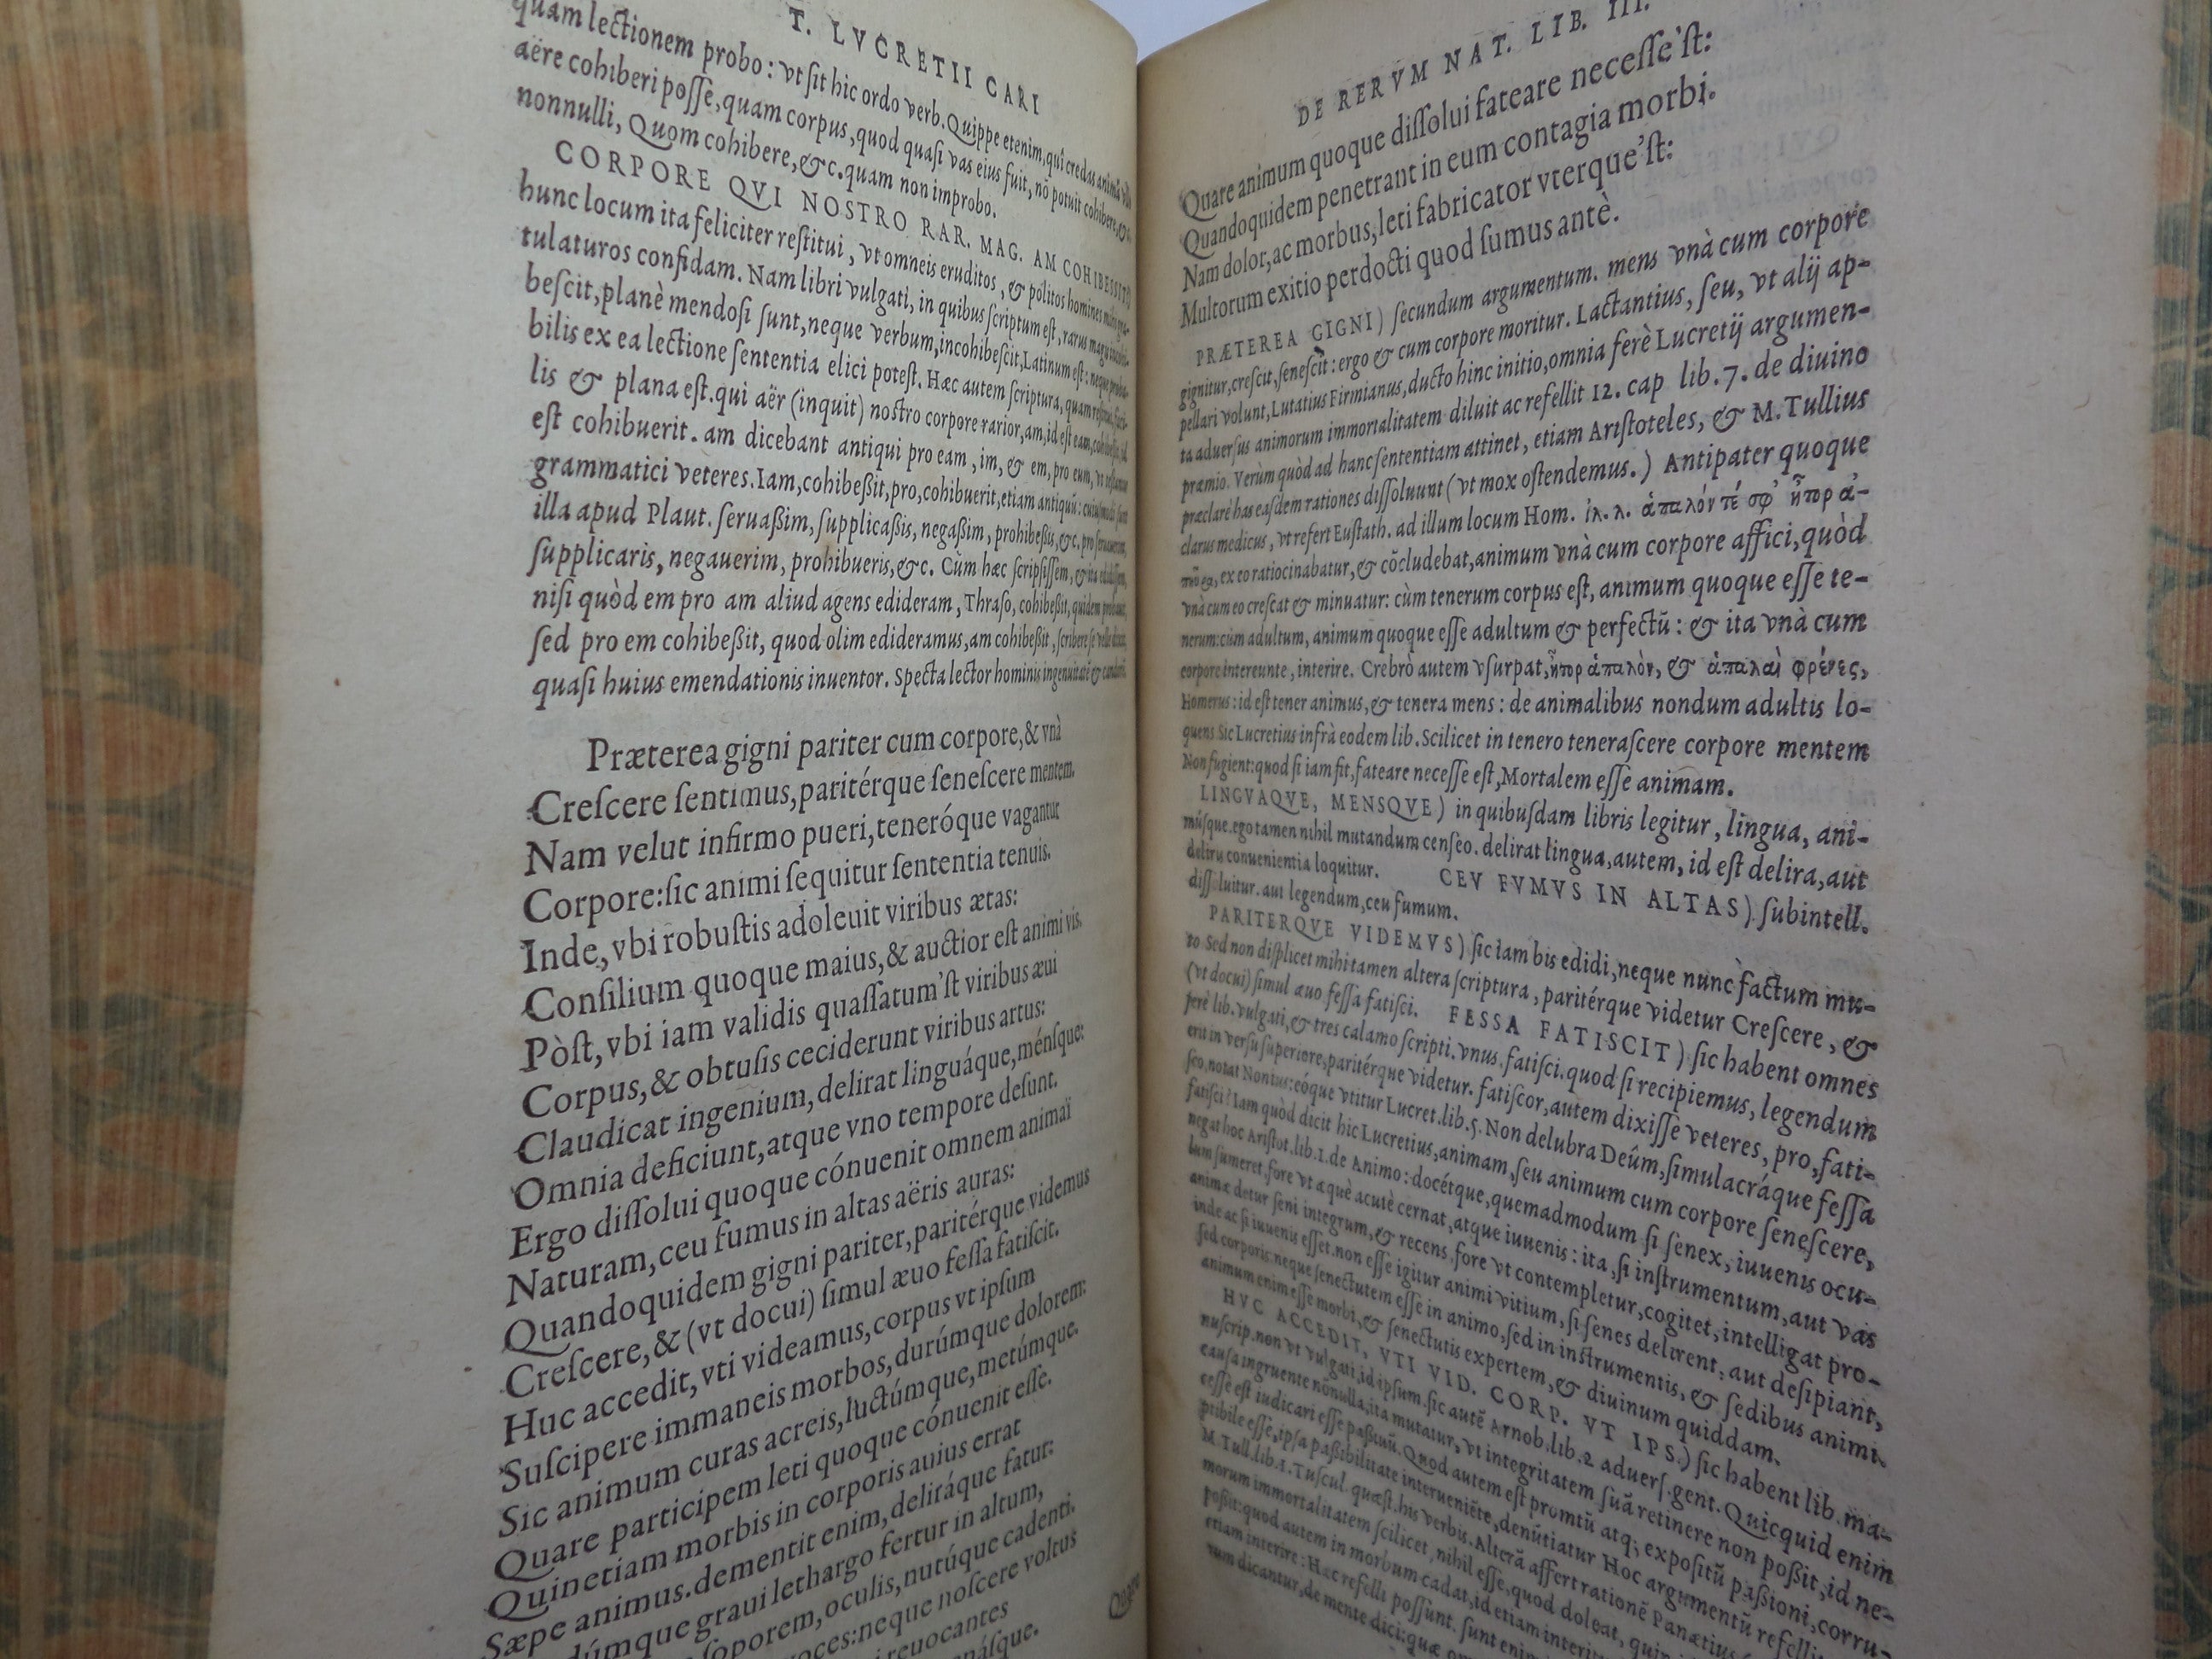 TITUS LUCRETIUS CARUS: DE RERUM NATURA LIBRI VI 1570 ON THE NATURE OF THINGS